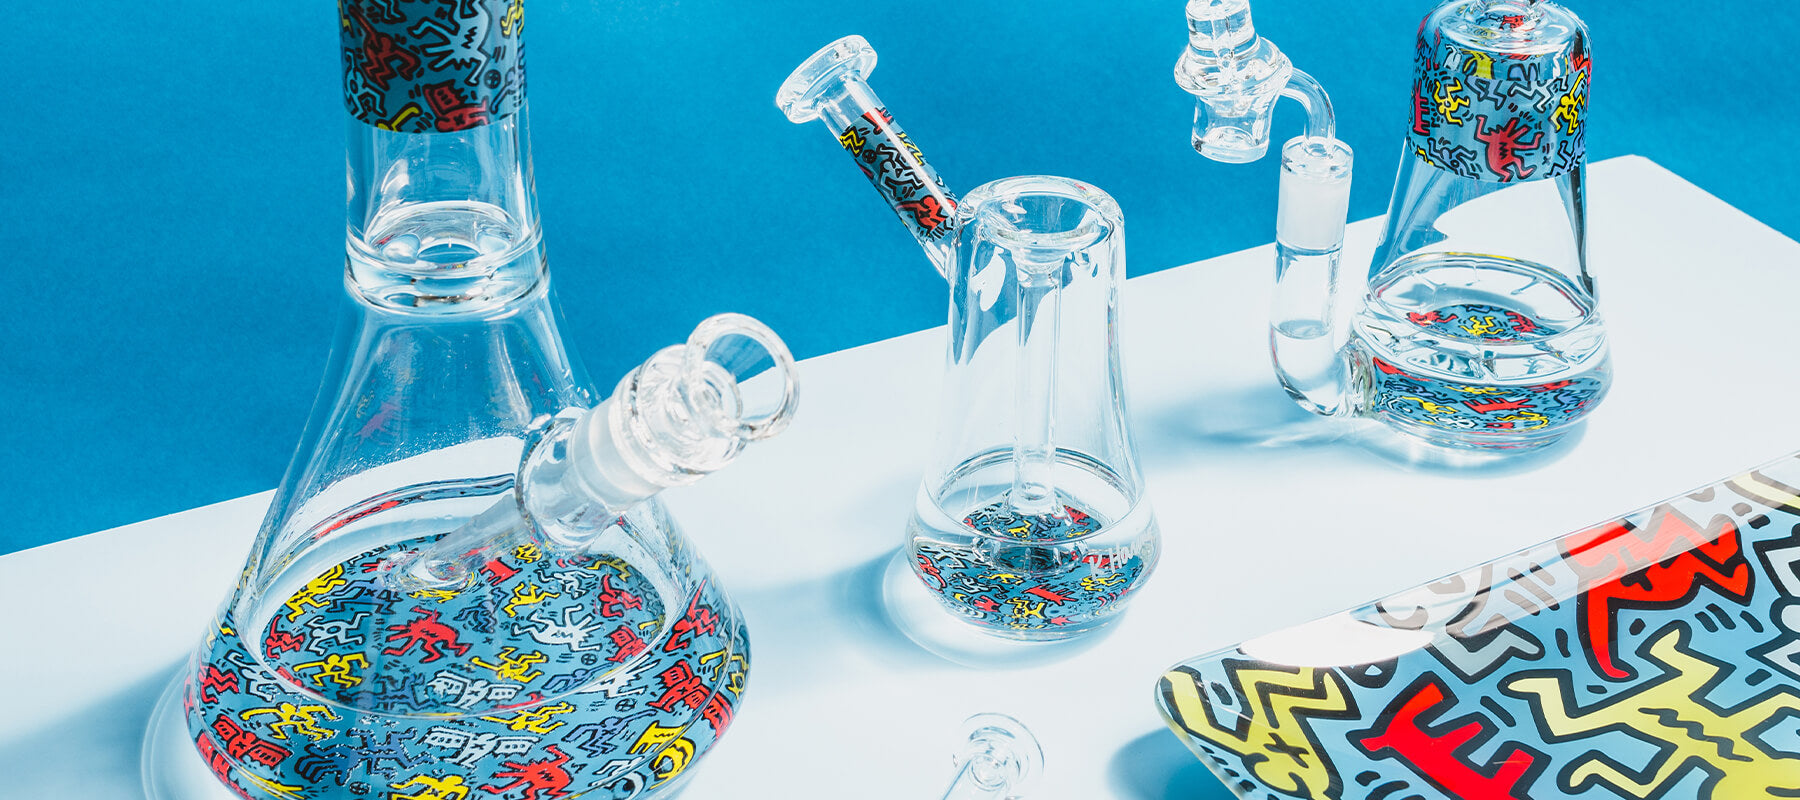 K.Haring Glass Bubbler - Shop HigherStandards – HIGHER STANDARDS